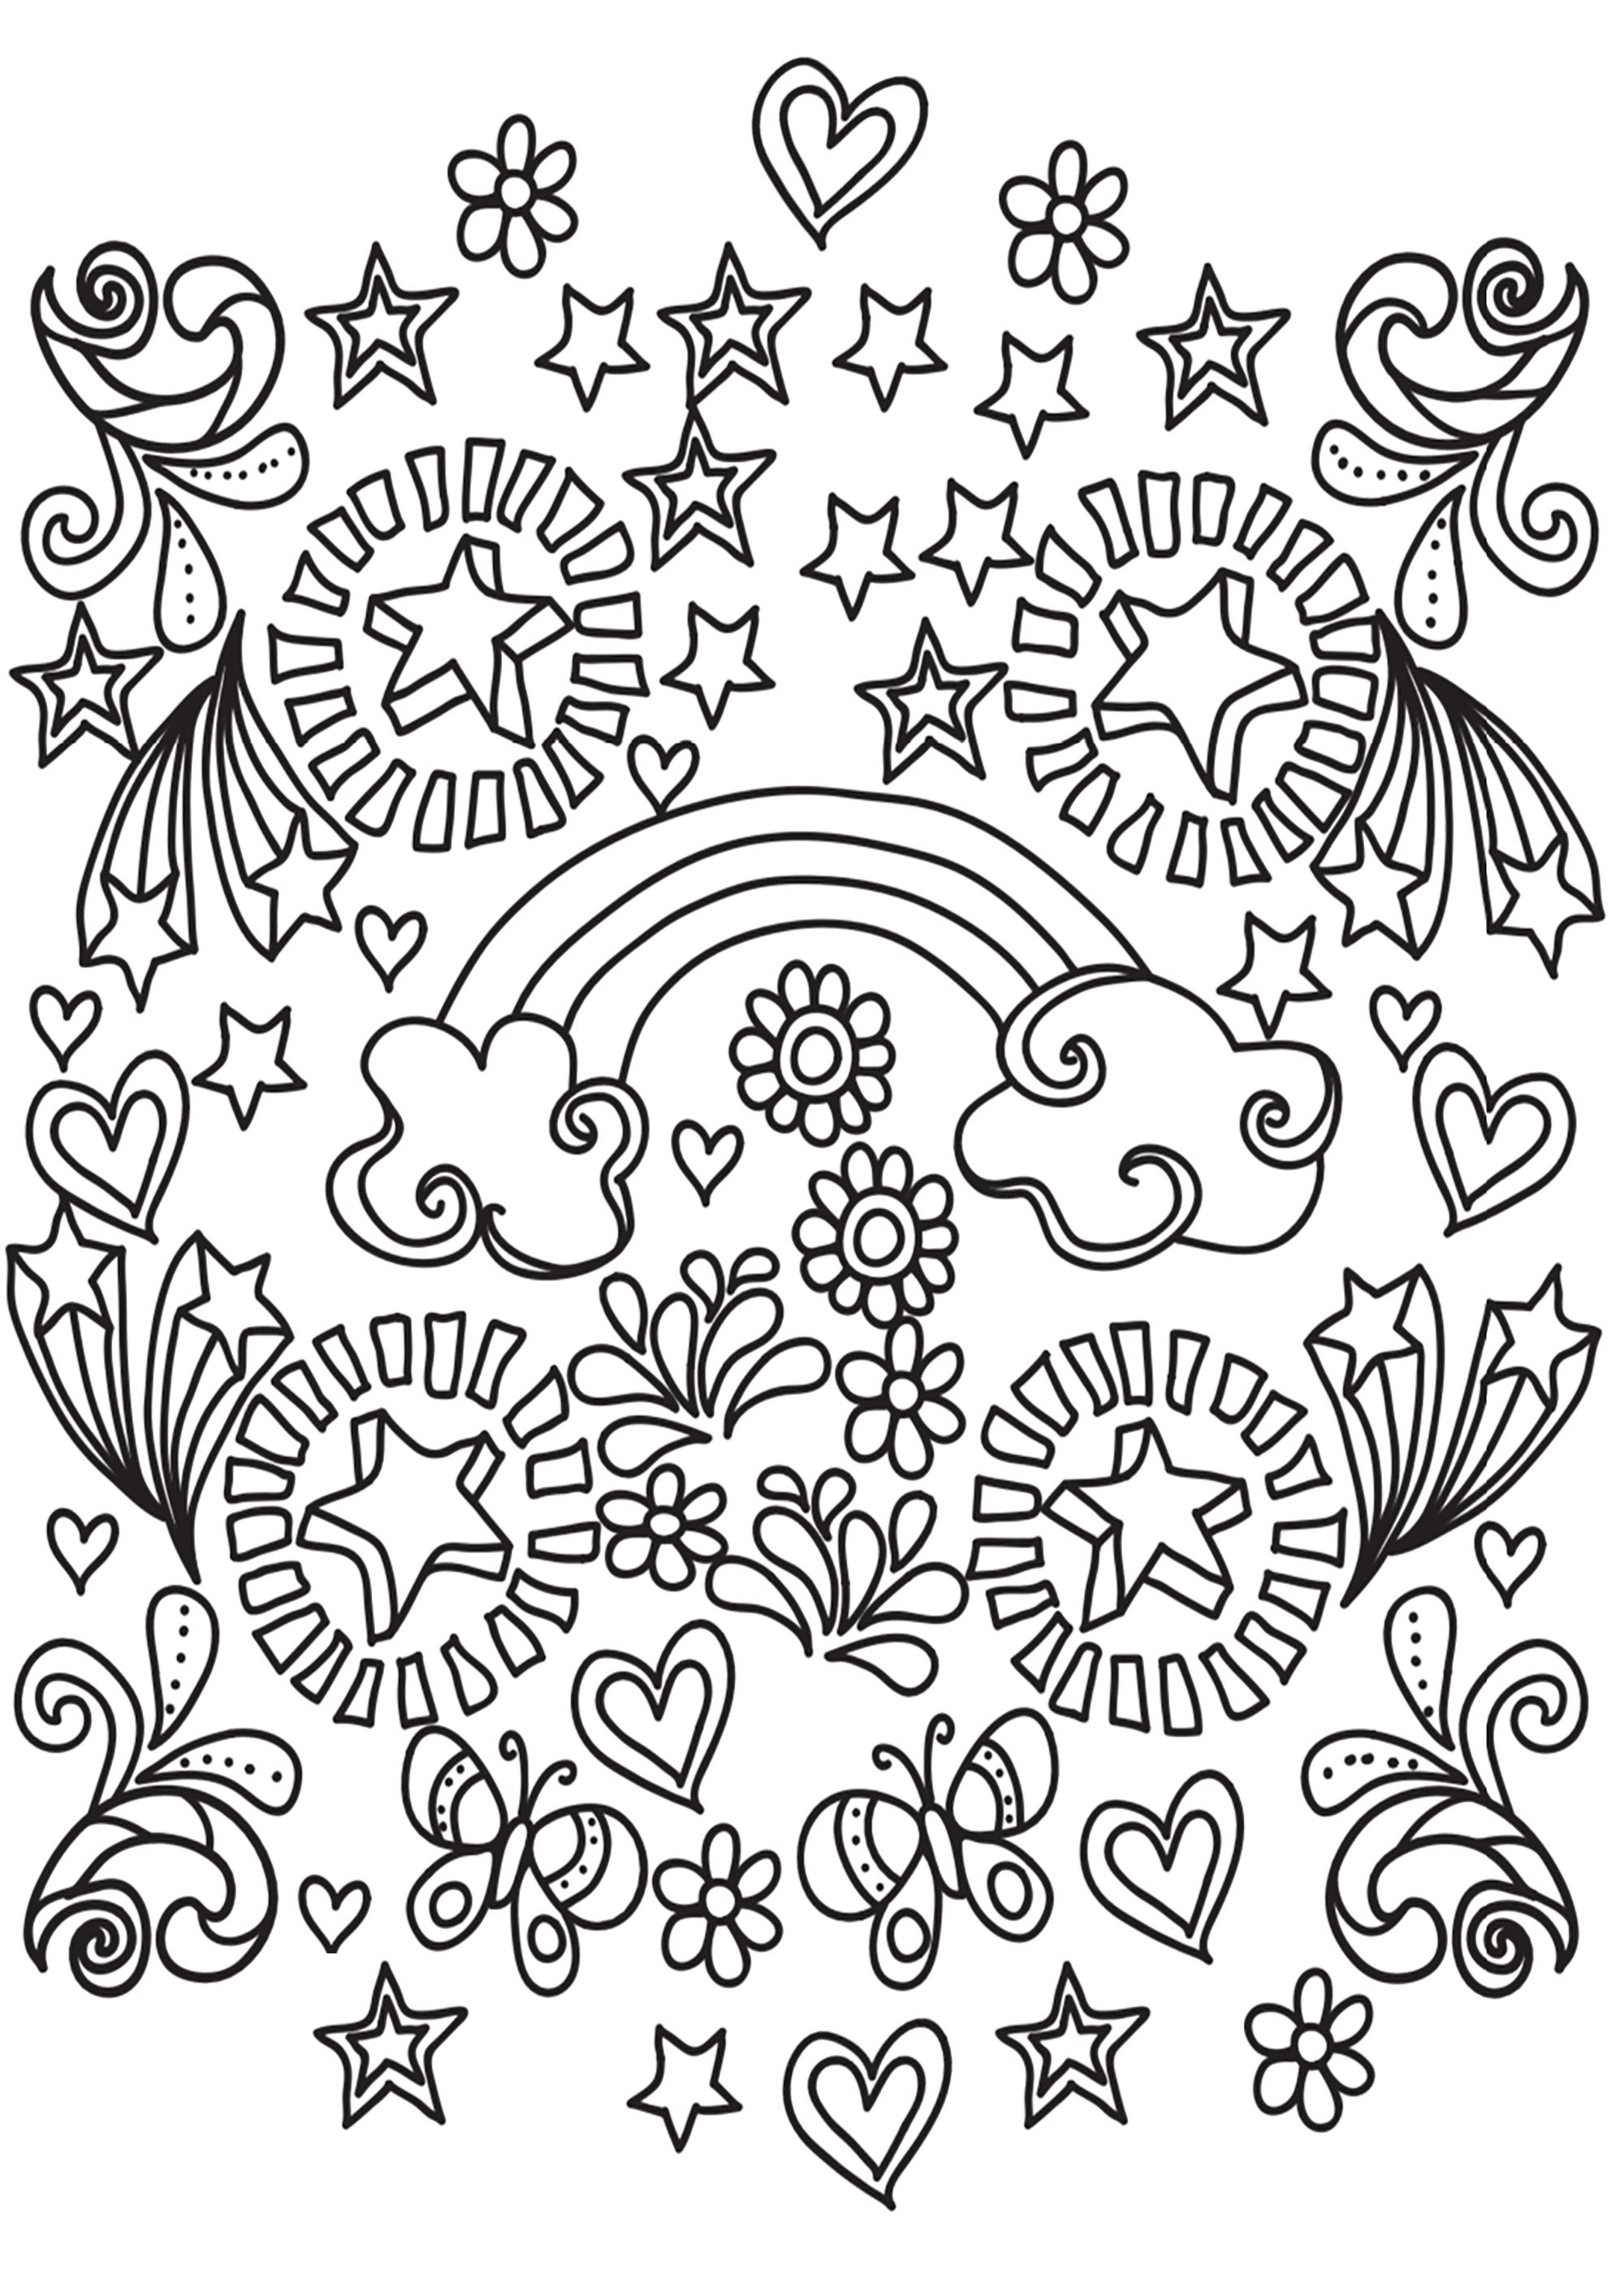 Un Doodle lleno de formas, temas y motivos que representan la alegría de vivir. Estrellas, corazones, arco iris, mariposas... ¡Terminarás este libro para colorear con una gran sonrisa!